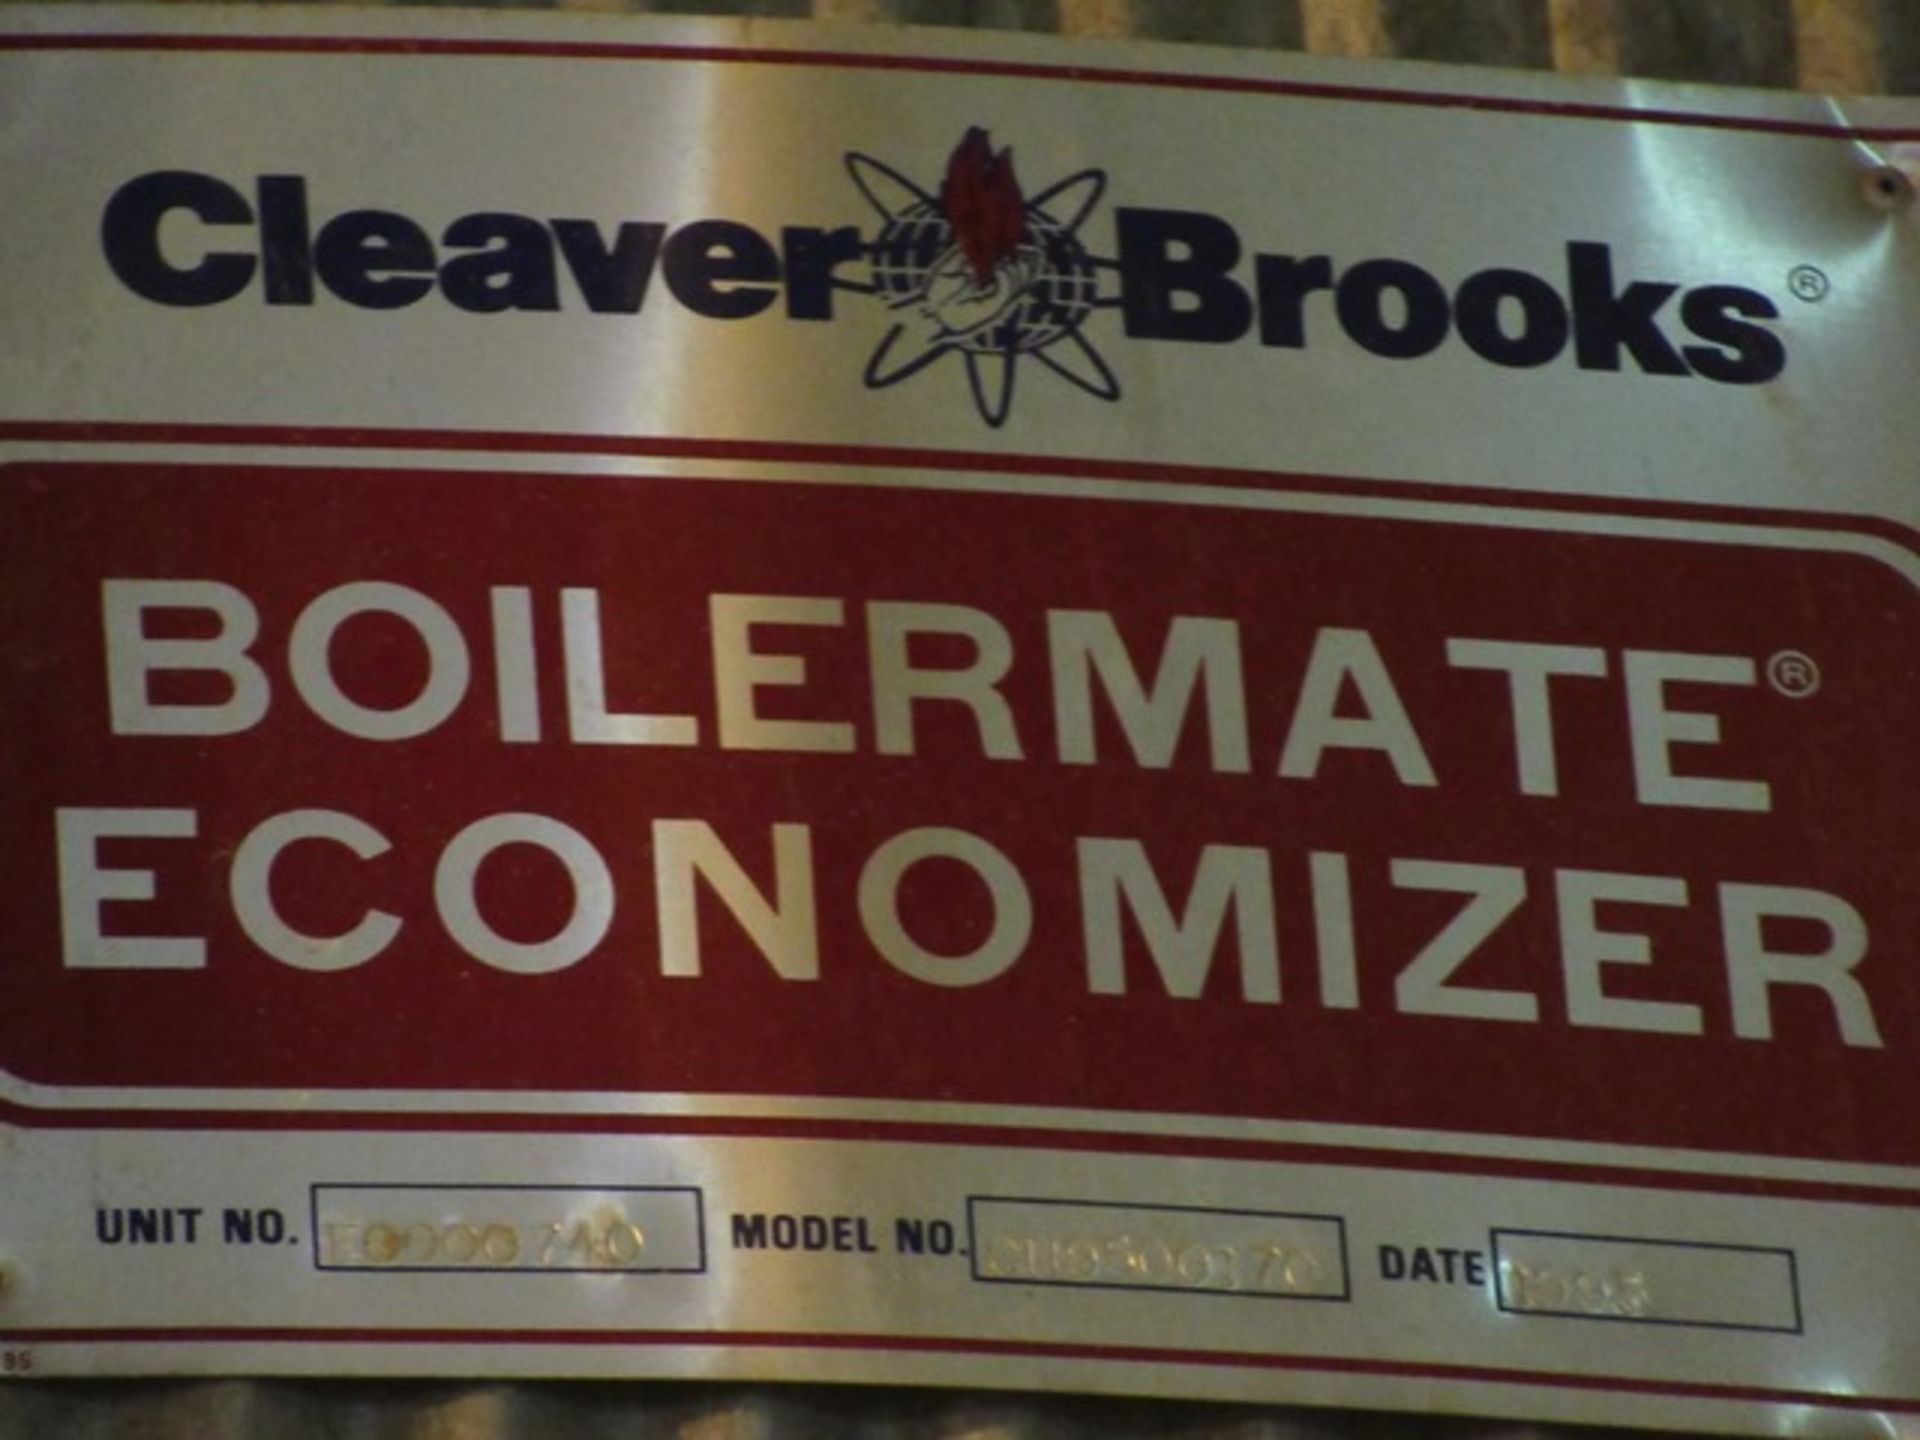 CLEAVER BROOKS WT-700-CN-3 44,000# PER HR. WOOLER TUBE BOILER W/CU9500170 BOILER MATE ECONOMIZER, - Image 5 of 6